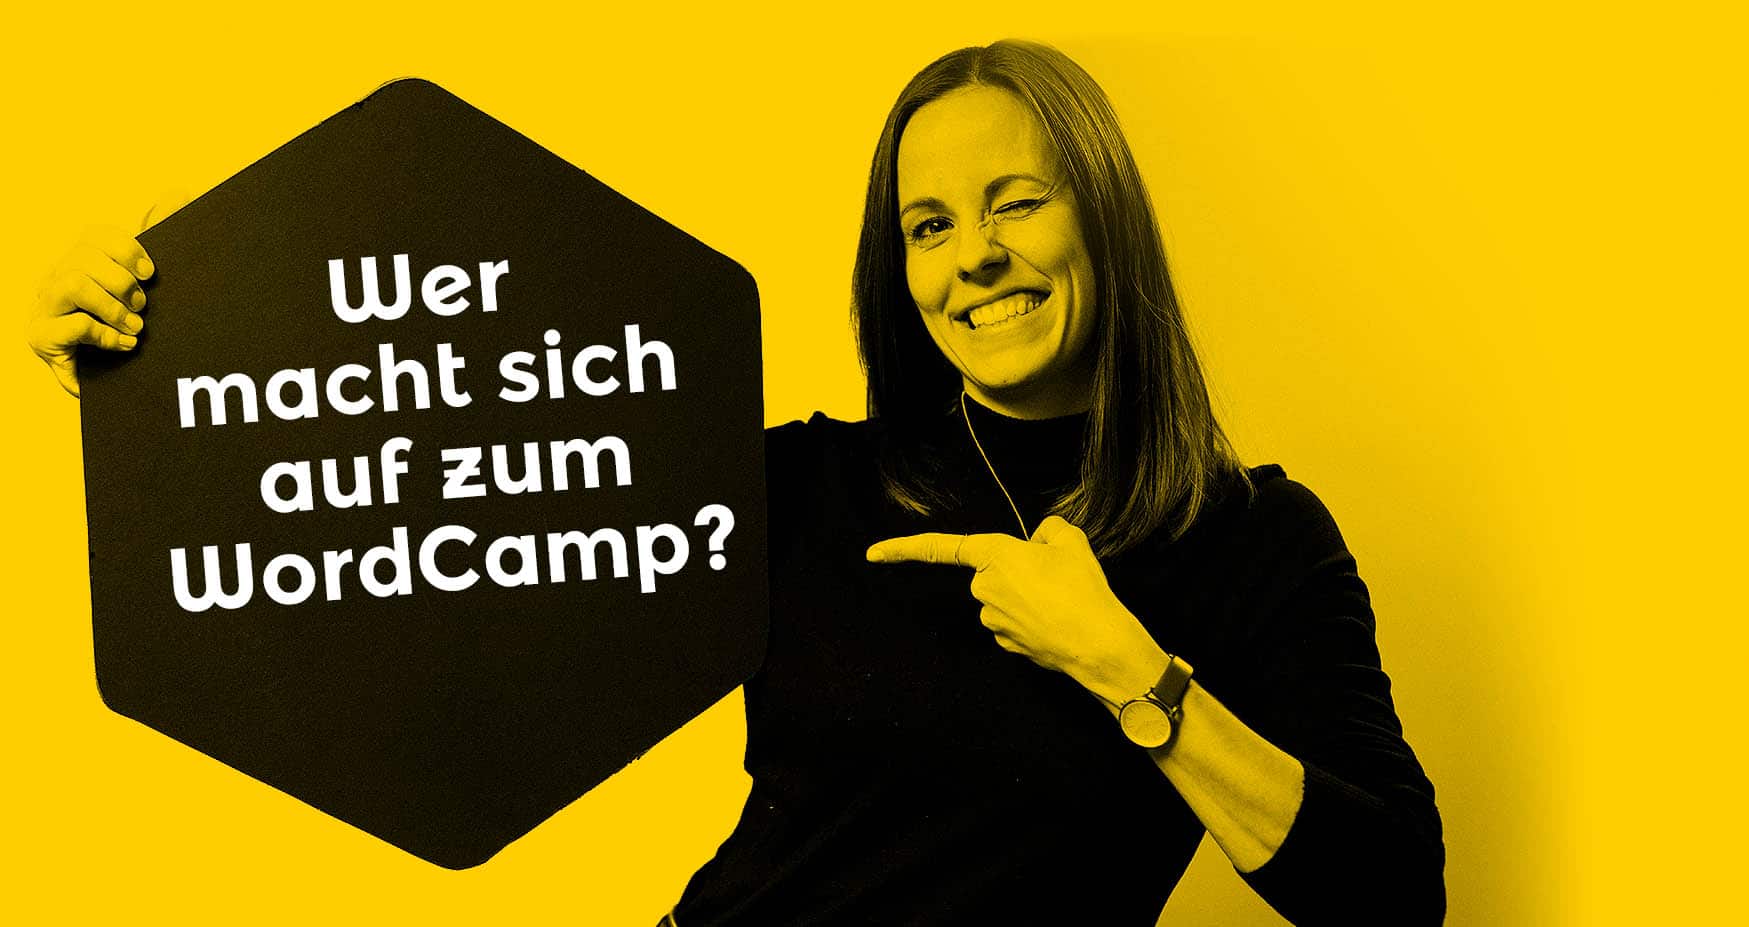 Das WordCamp Design für Osnabrück ist herausstechend